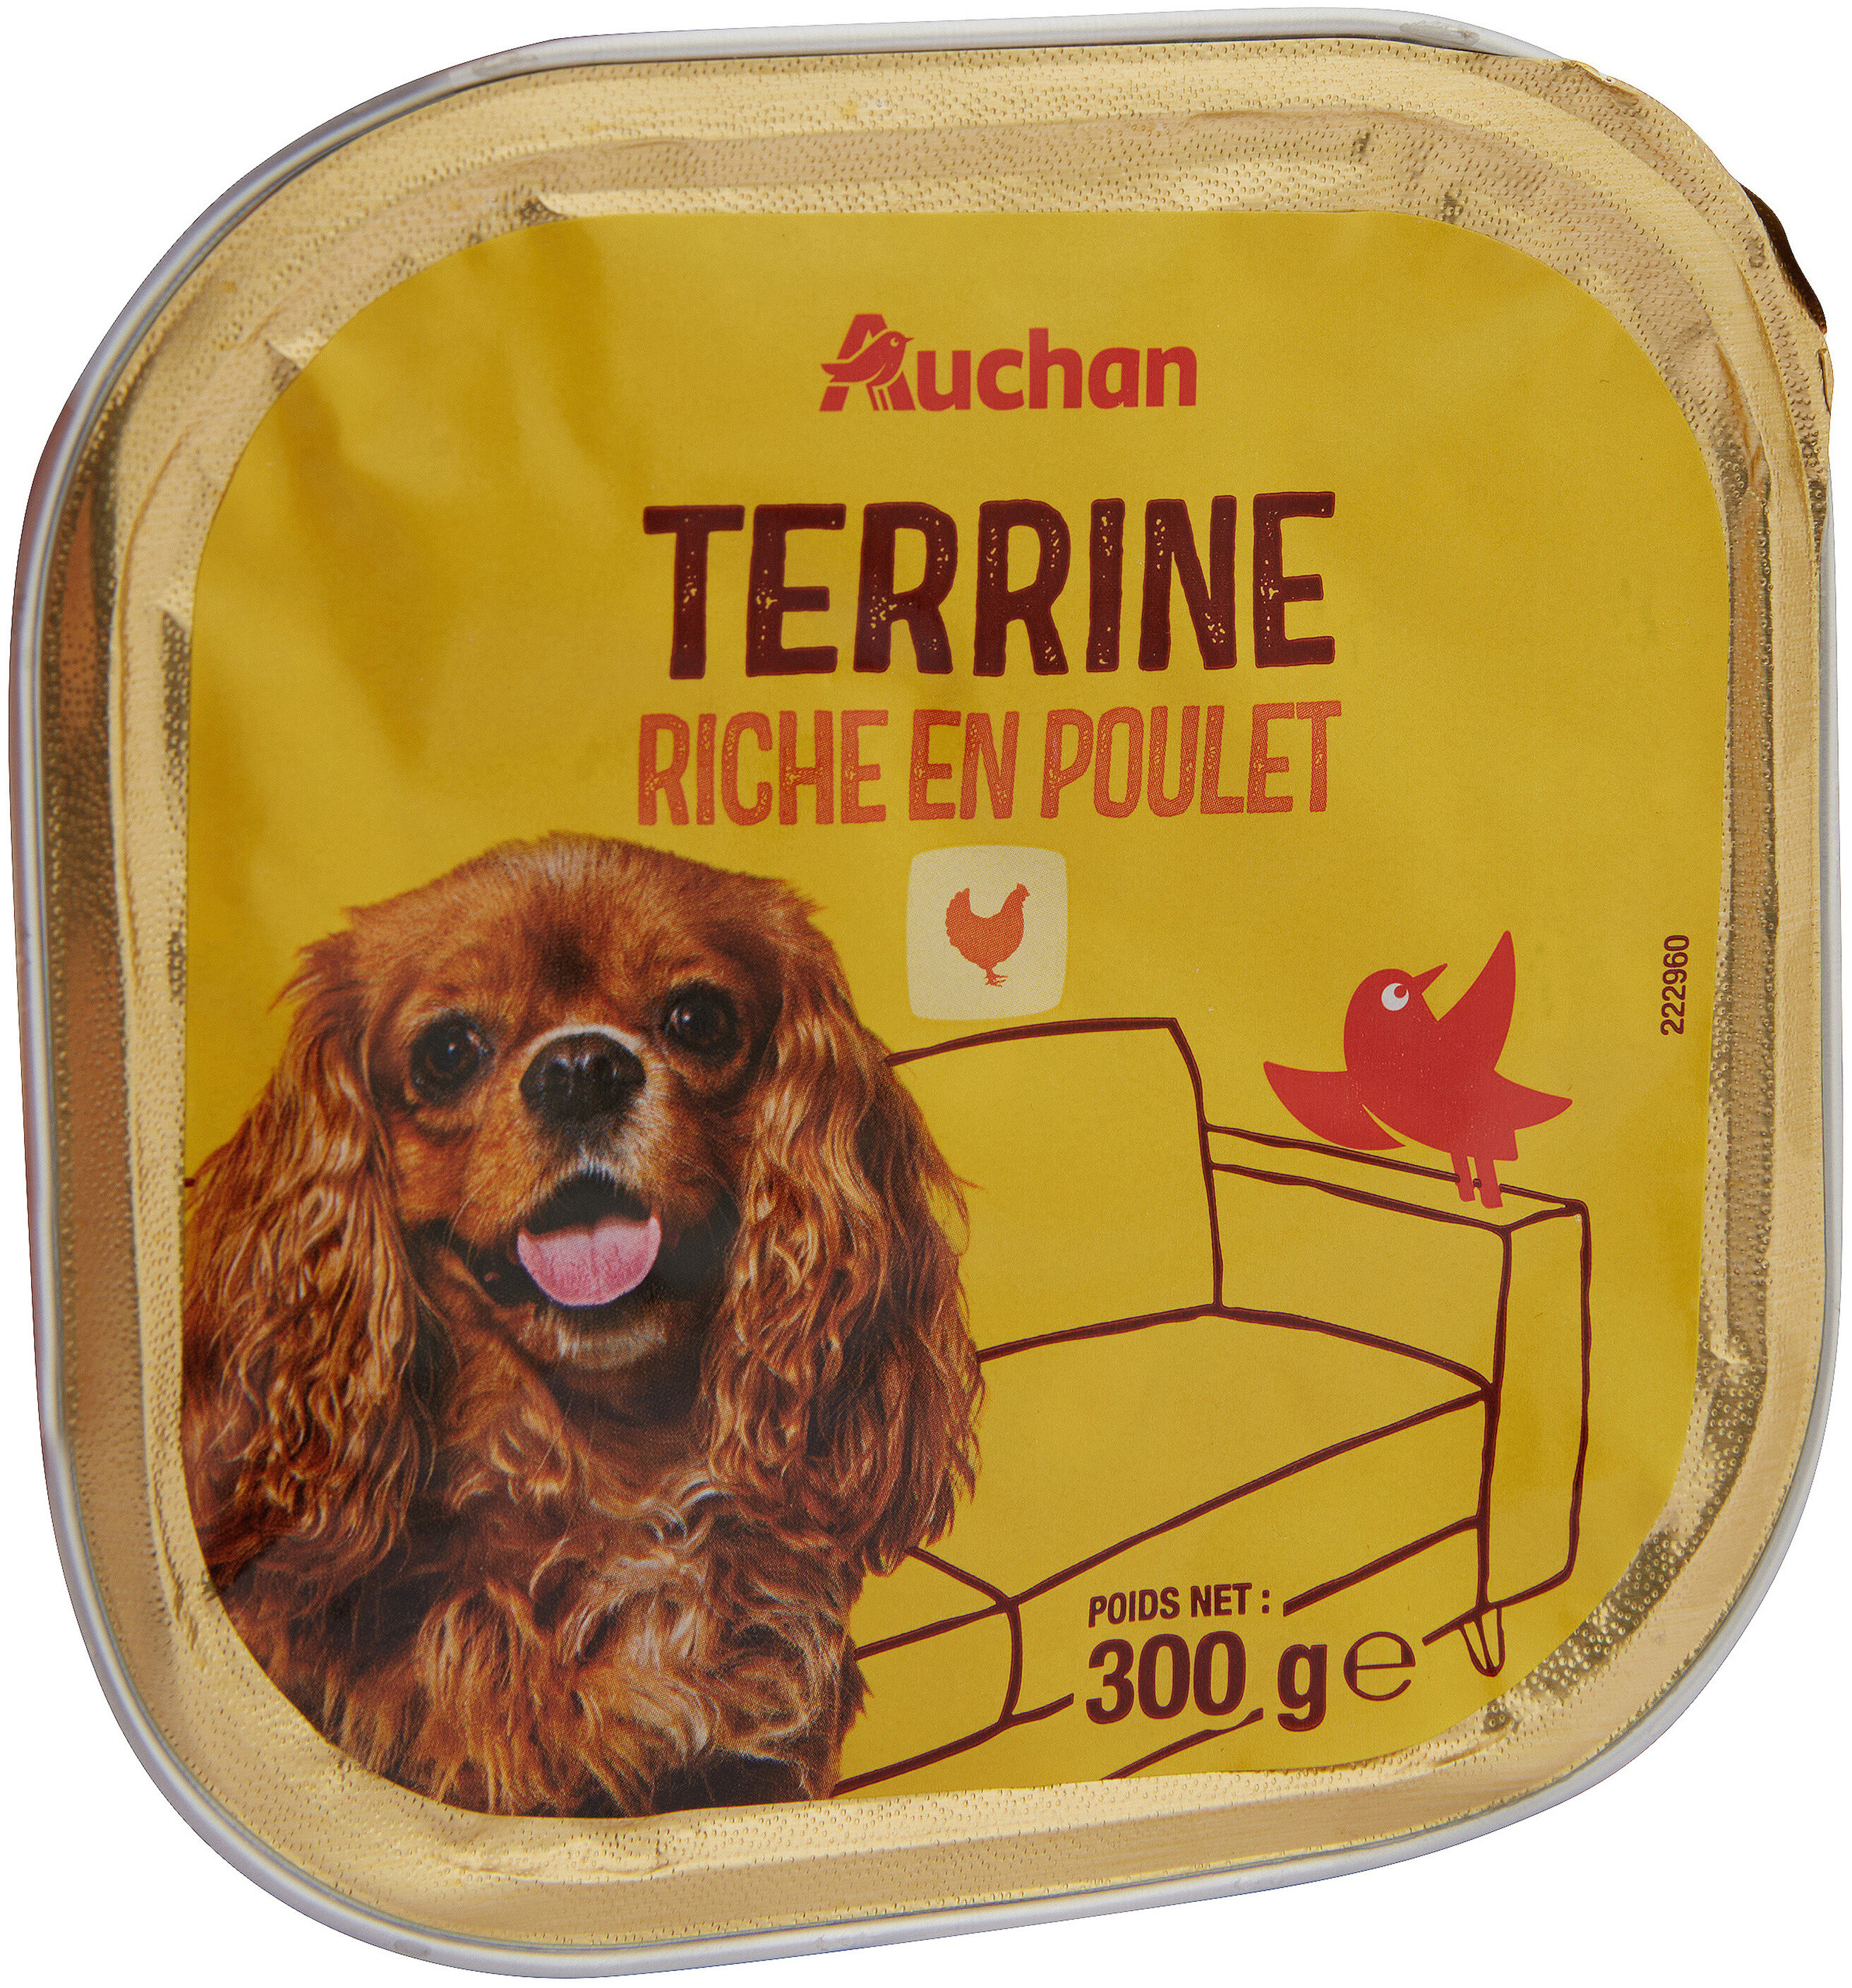 Terrine riche en poulet - Product - fr